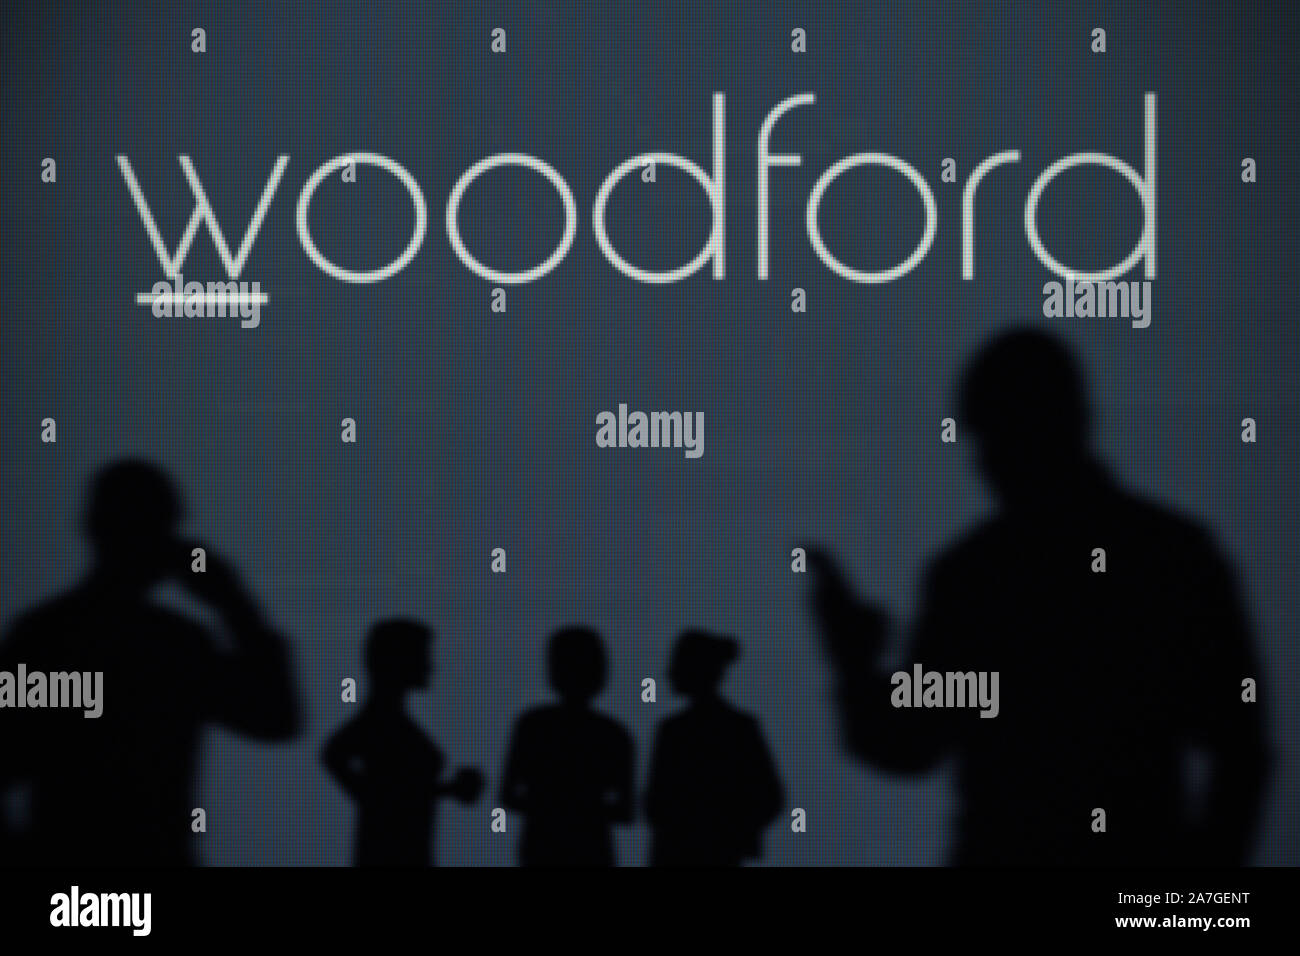 Il Woodford capitale paziente fiducia logo è visibile su uno schermo a LED in background mentre si profila una persona utilizza uno smartphone (solo uso editoriale) Foto Stock